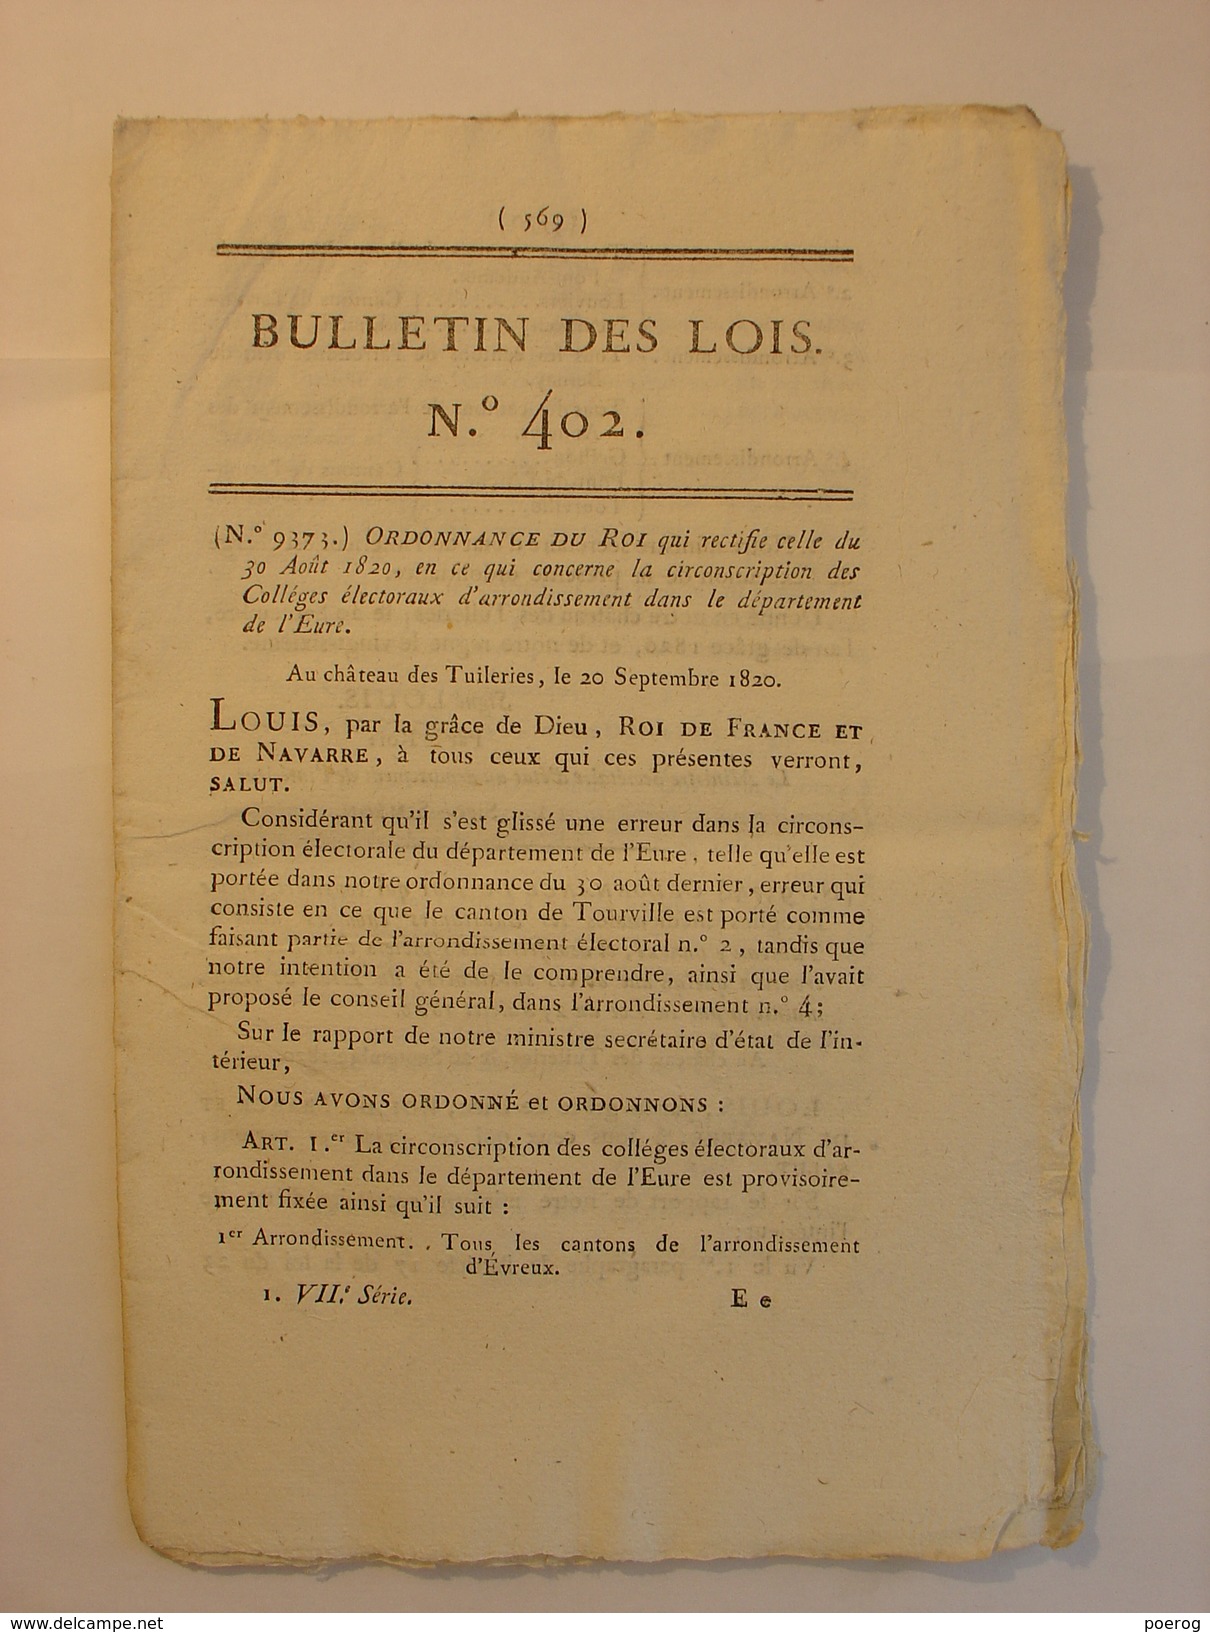 BULLETIN DES LOIS De 1820 - MEDECINE MEDICAMENT LISTE DROGUES MEDICINALES - ARCHEVEQUES BOURGES TOULOUSE EVEQUE SOISSONS - Decrees & Laws